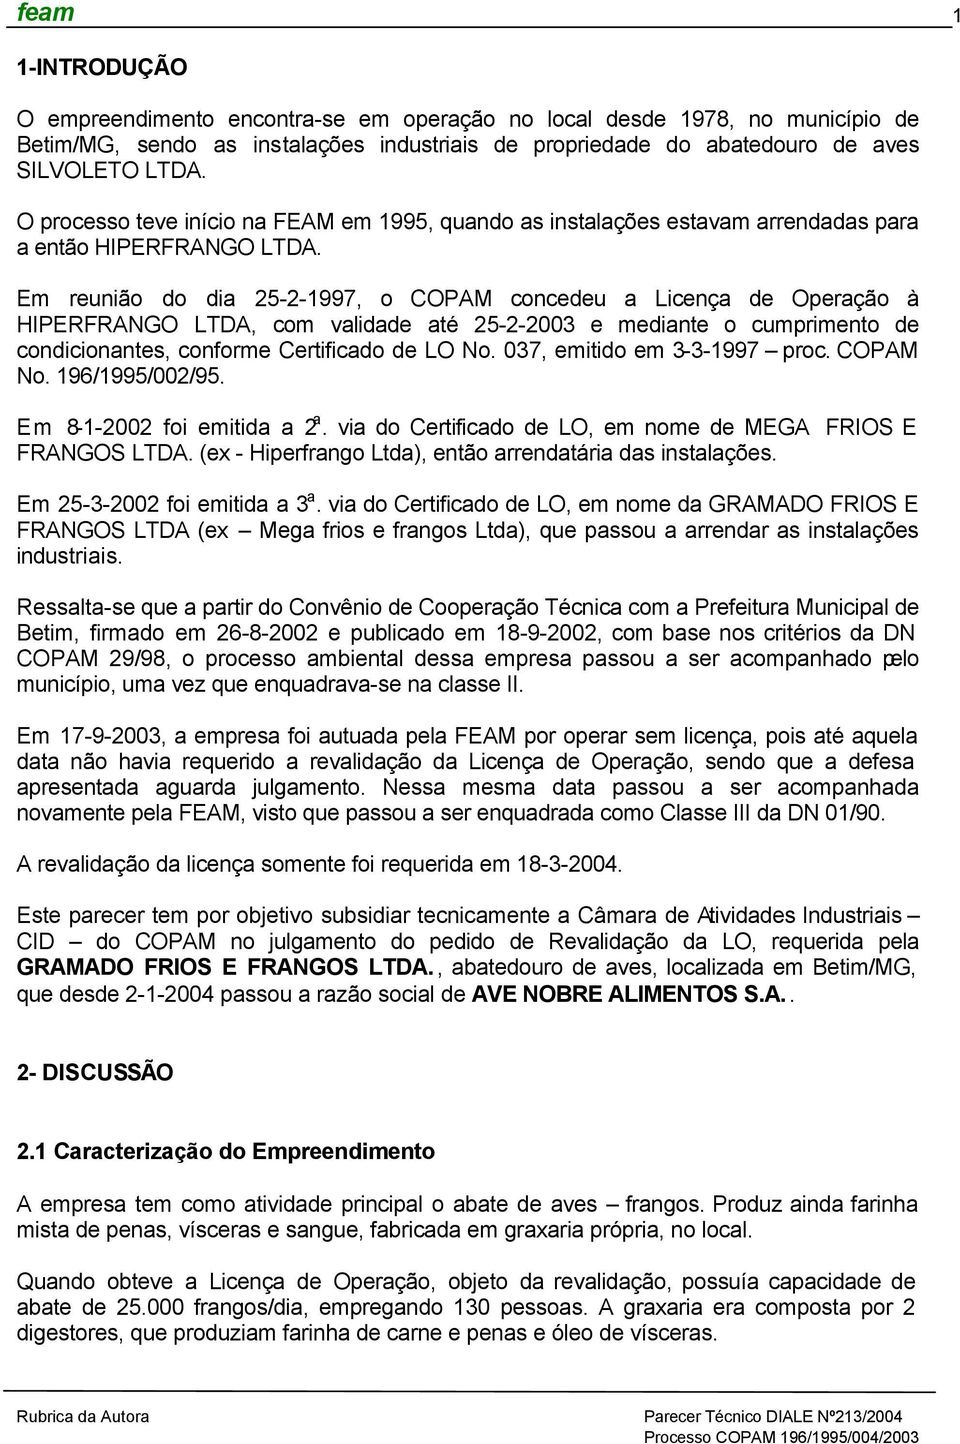 Em reunião do dia 25-2-1997, o COPAM concedeu a Licença de Operação à HIPERFRANGO LTDA, com validade até 25-2-2003 e mediante o cumprimento de condicionantes, conforme Certificado de LO No.